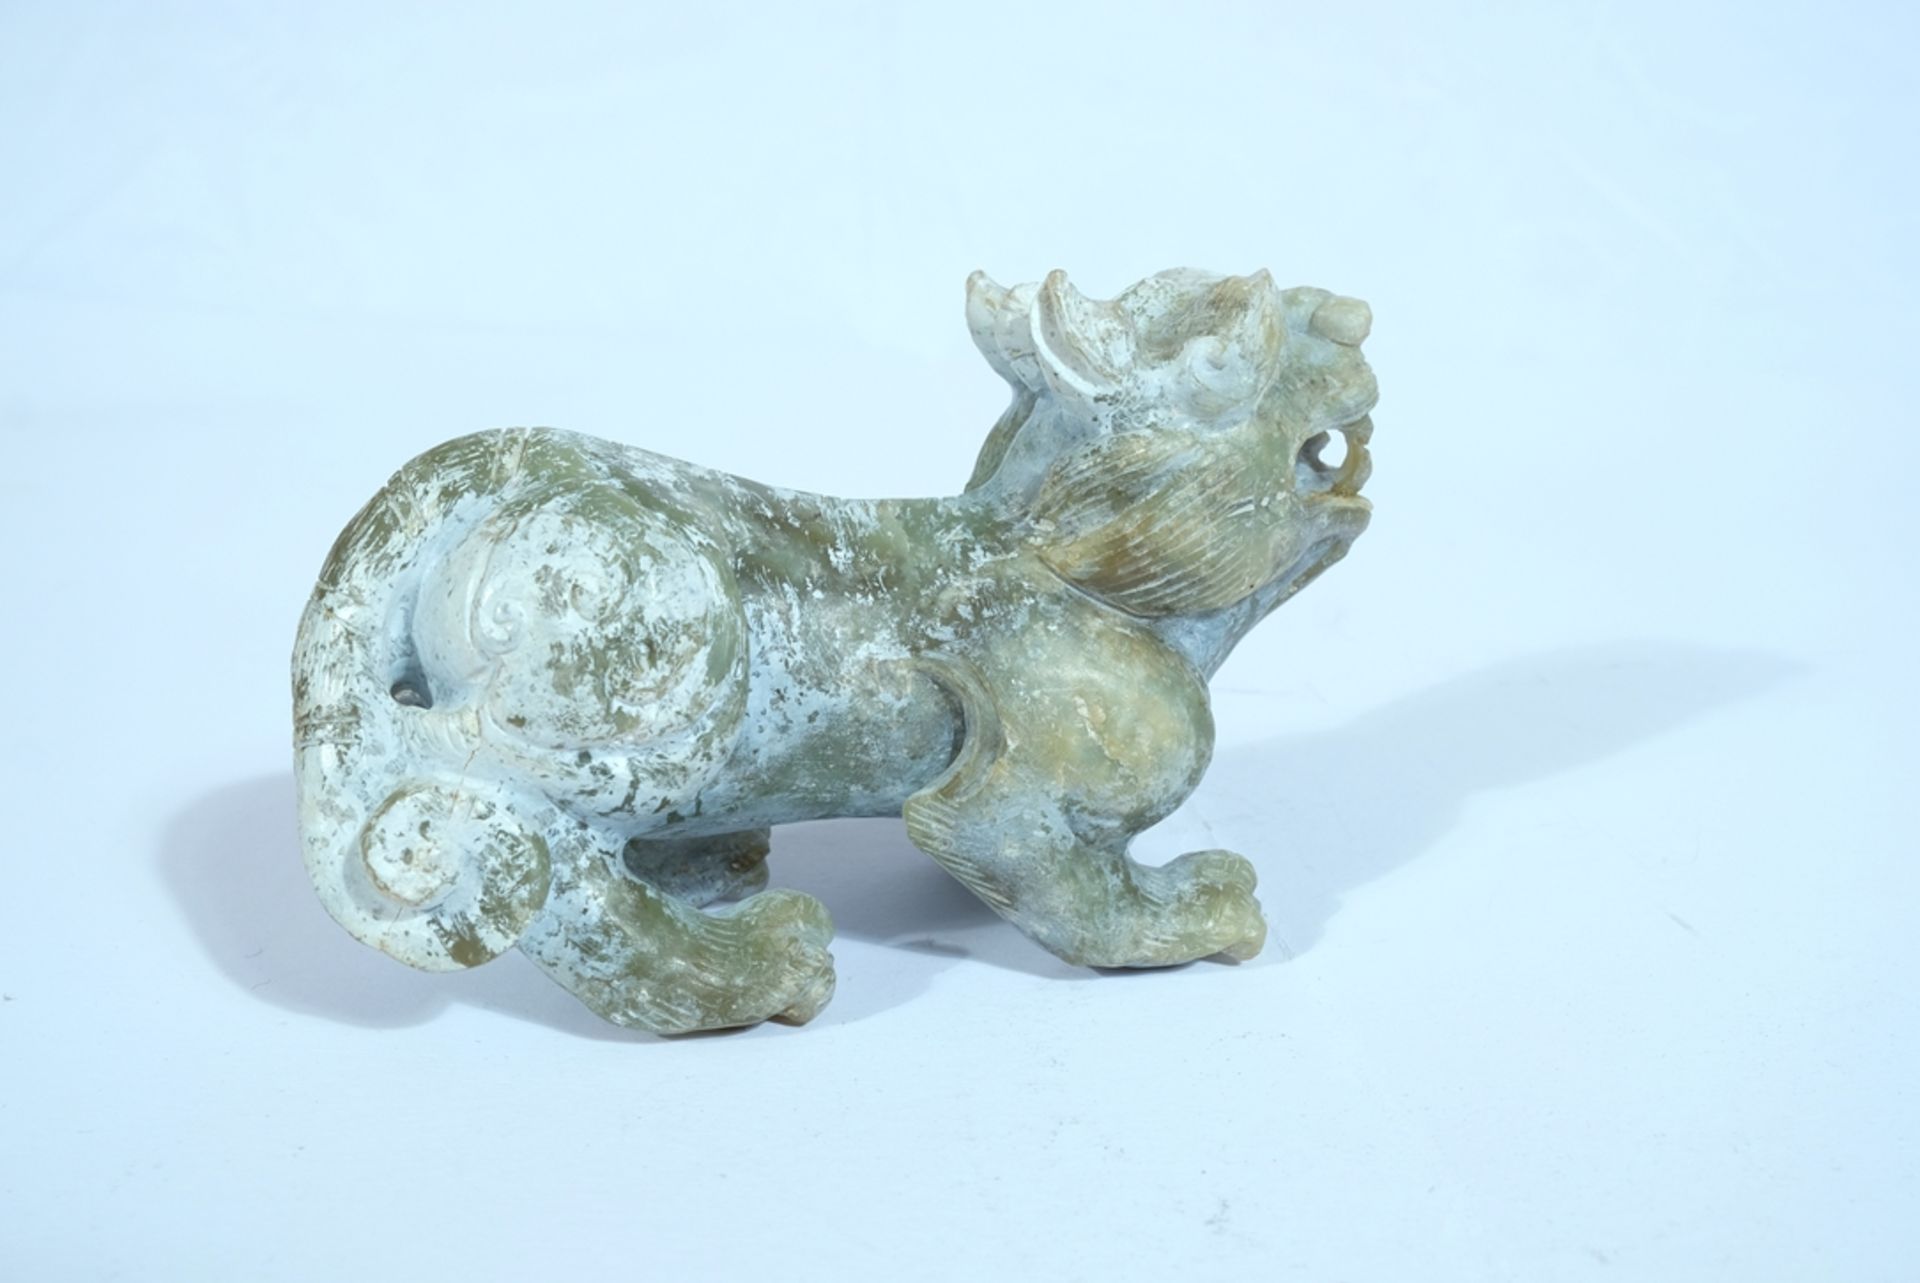 CHINA "Wächterlöwe", geschnitzter Stein. 13 x 8 x 4 cm. Im englischsprachigen Raum auch als Foo Dog - Image 2 of 2